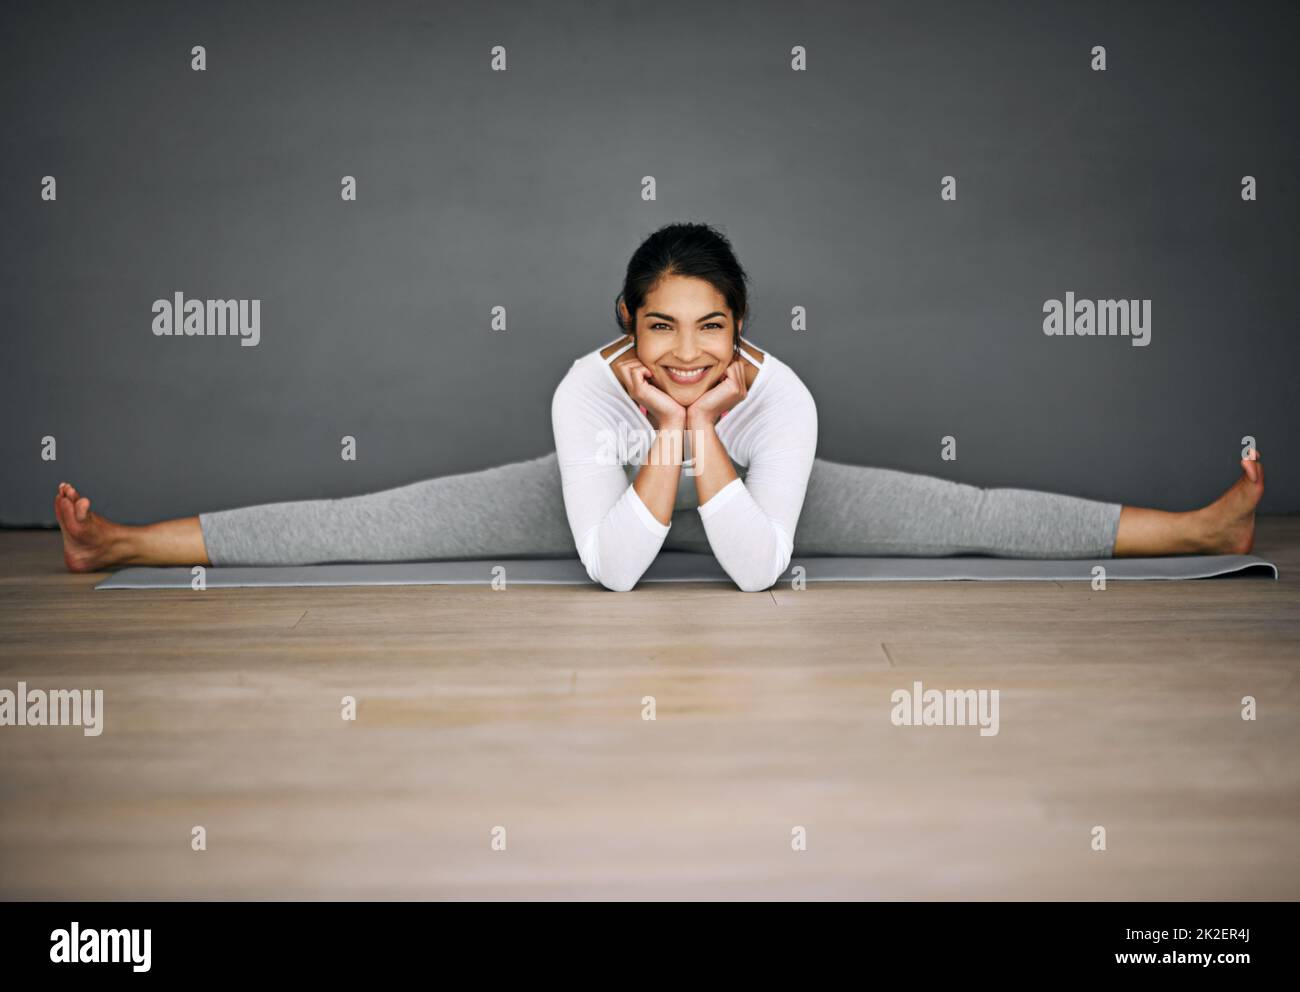 Vous serez étonné de ce que votre corps peut réaliser. Portrait d'une jeune femme attrayante faisant les fractionnements dans sa routine de yoga. Banque D'Images